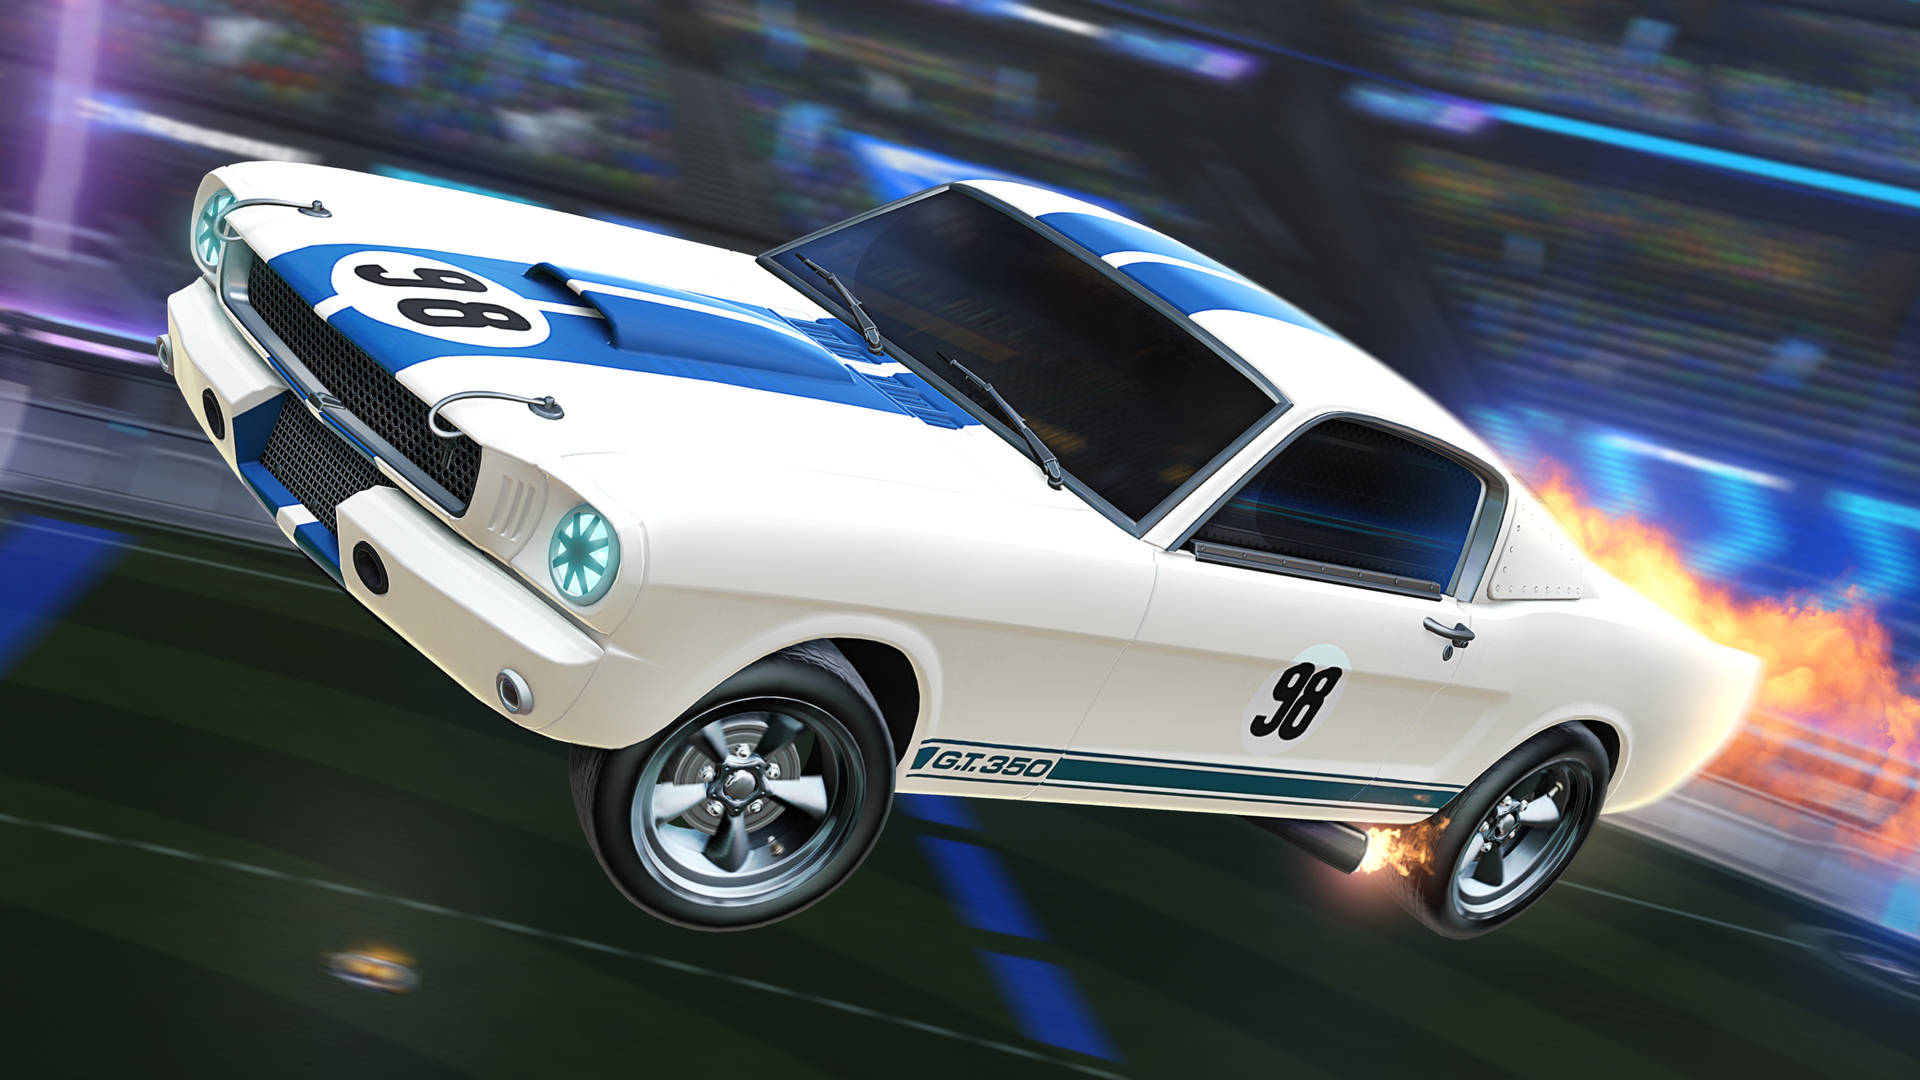 Mustangshelby Rocket League Auto 2k Wallpaper